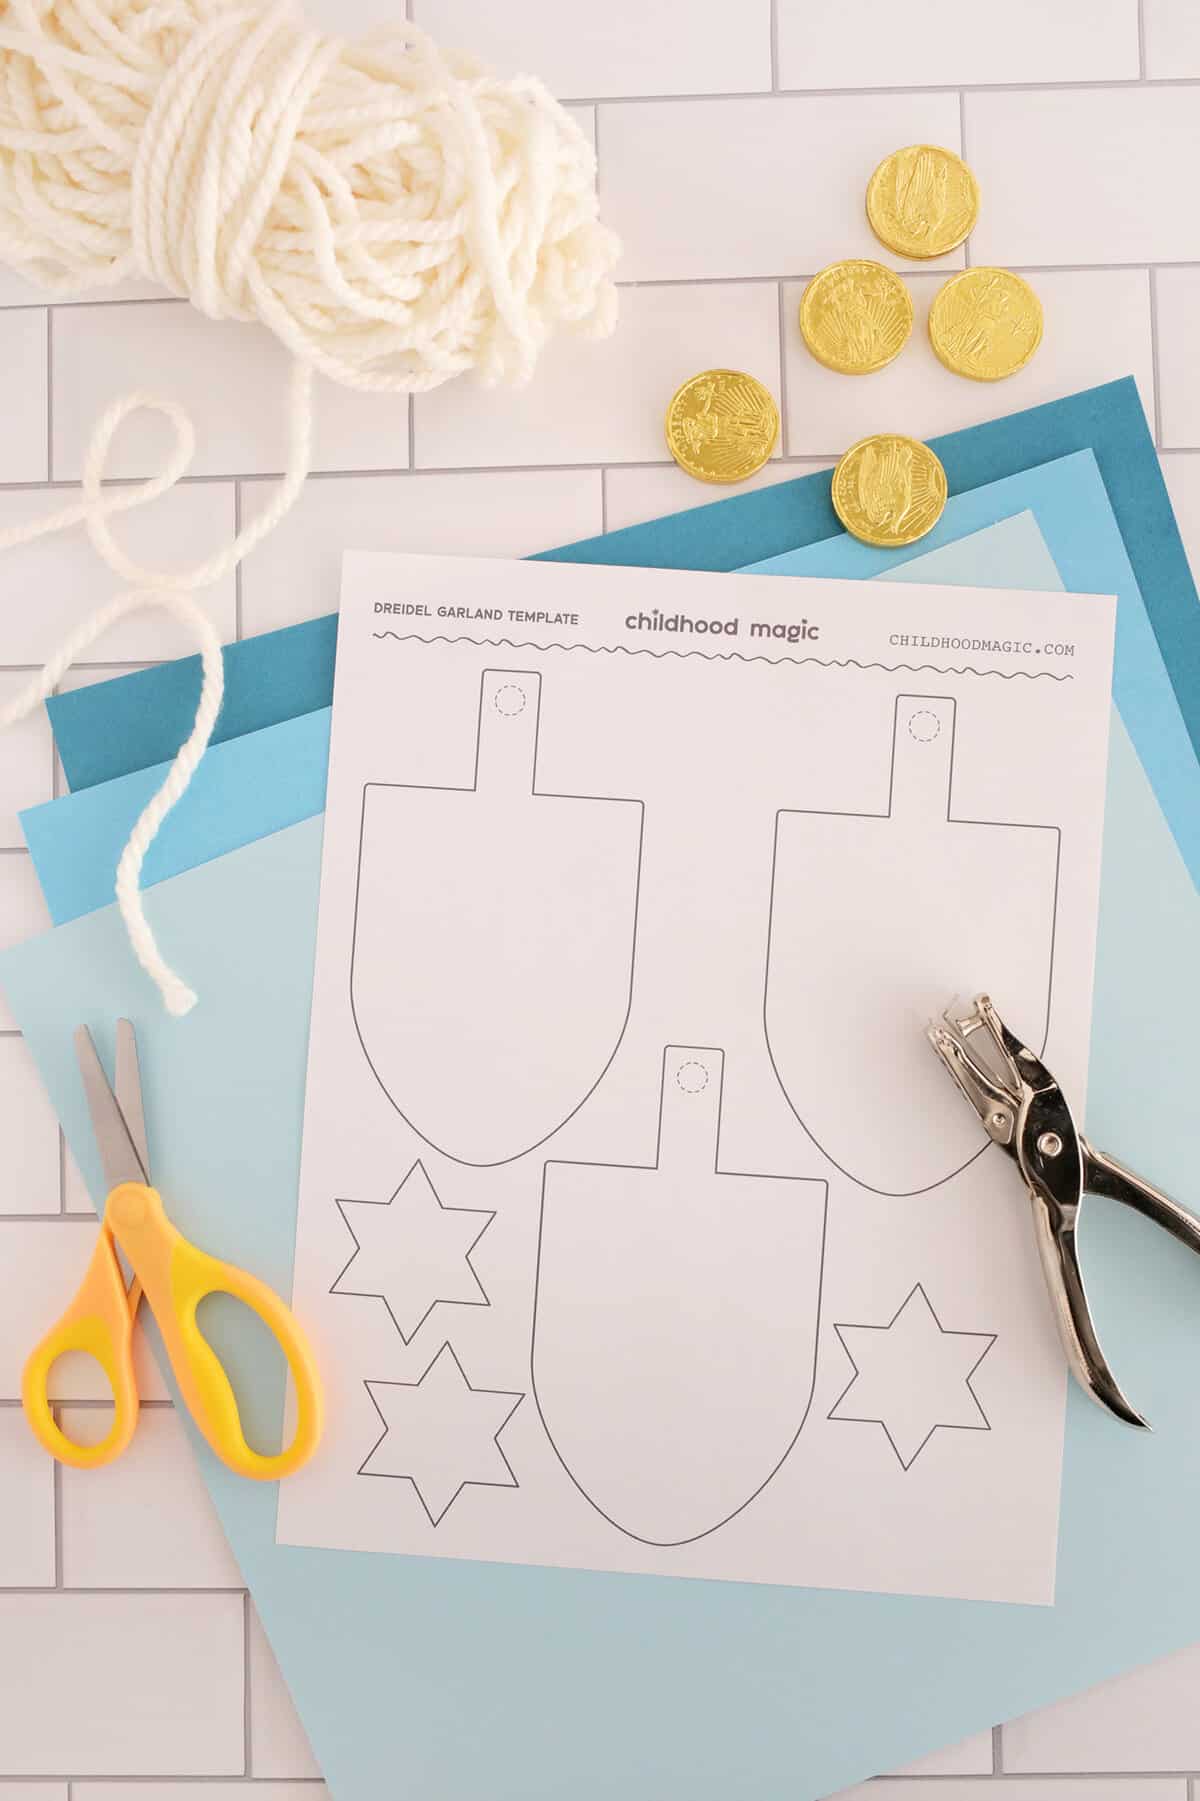 paper dreidel garland and template for Hanukkah